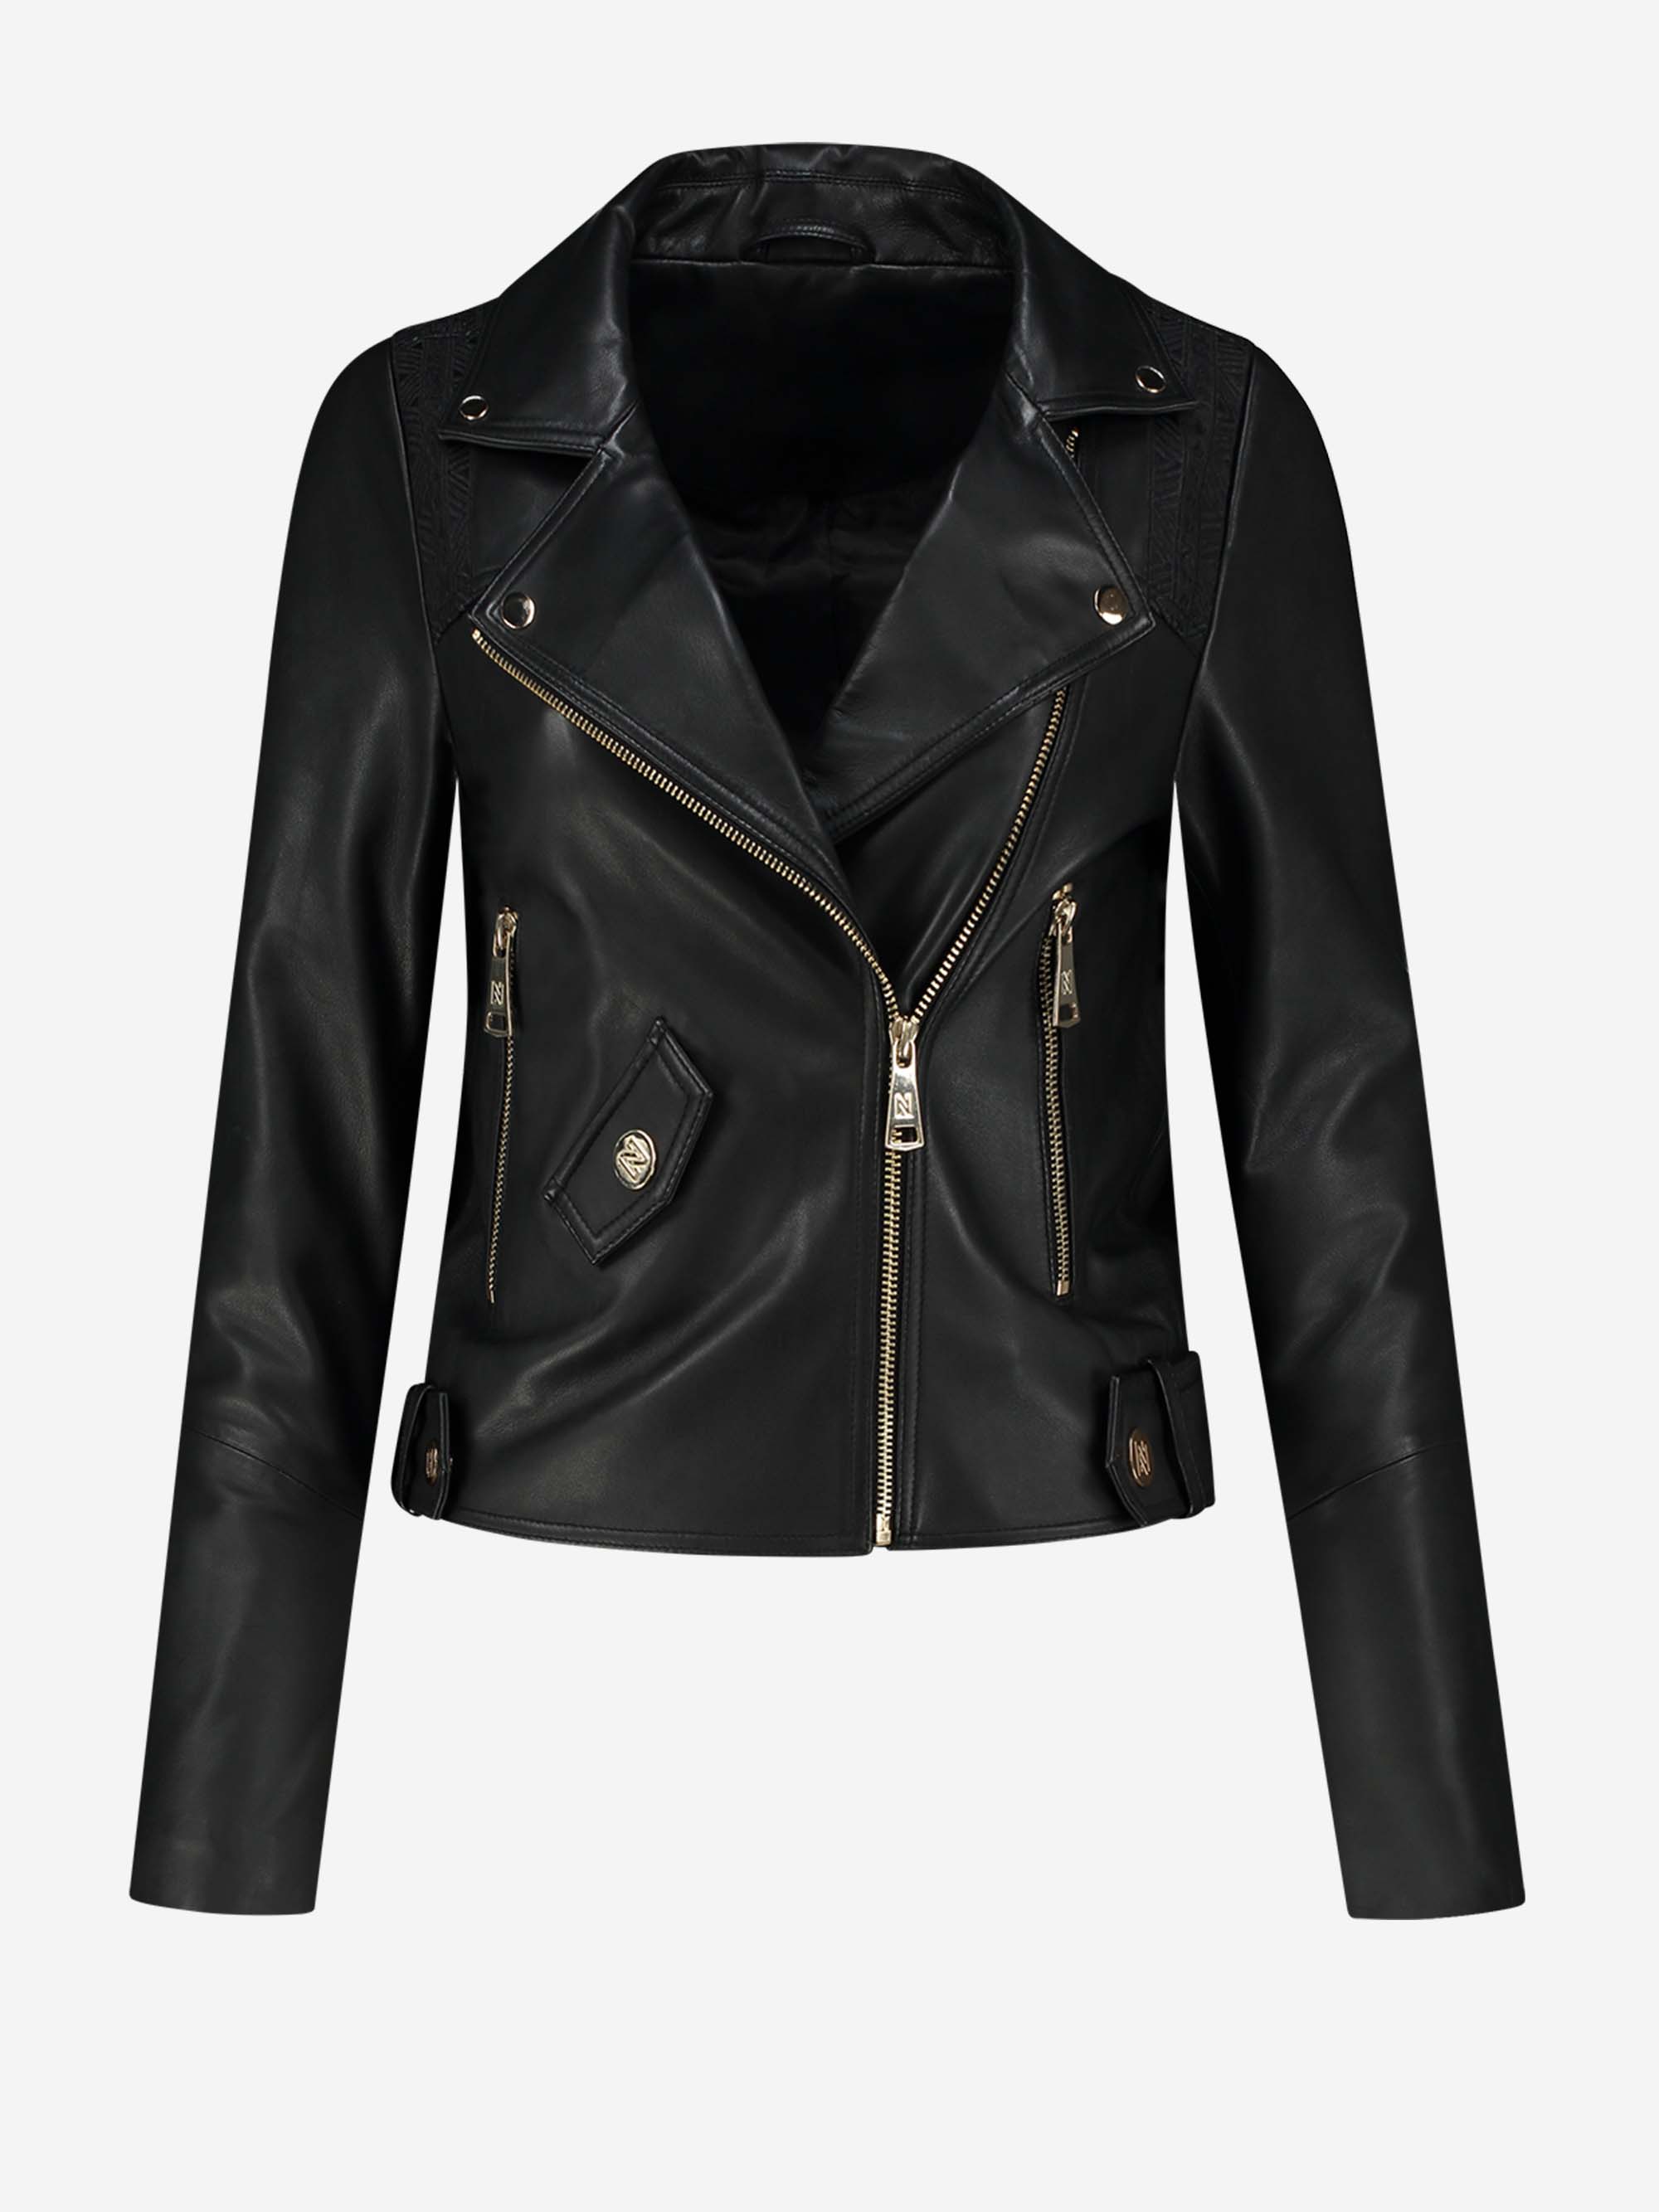  Leather jacket